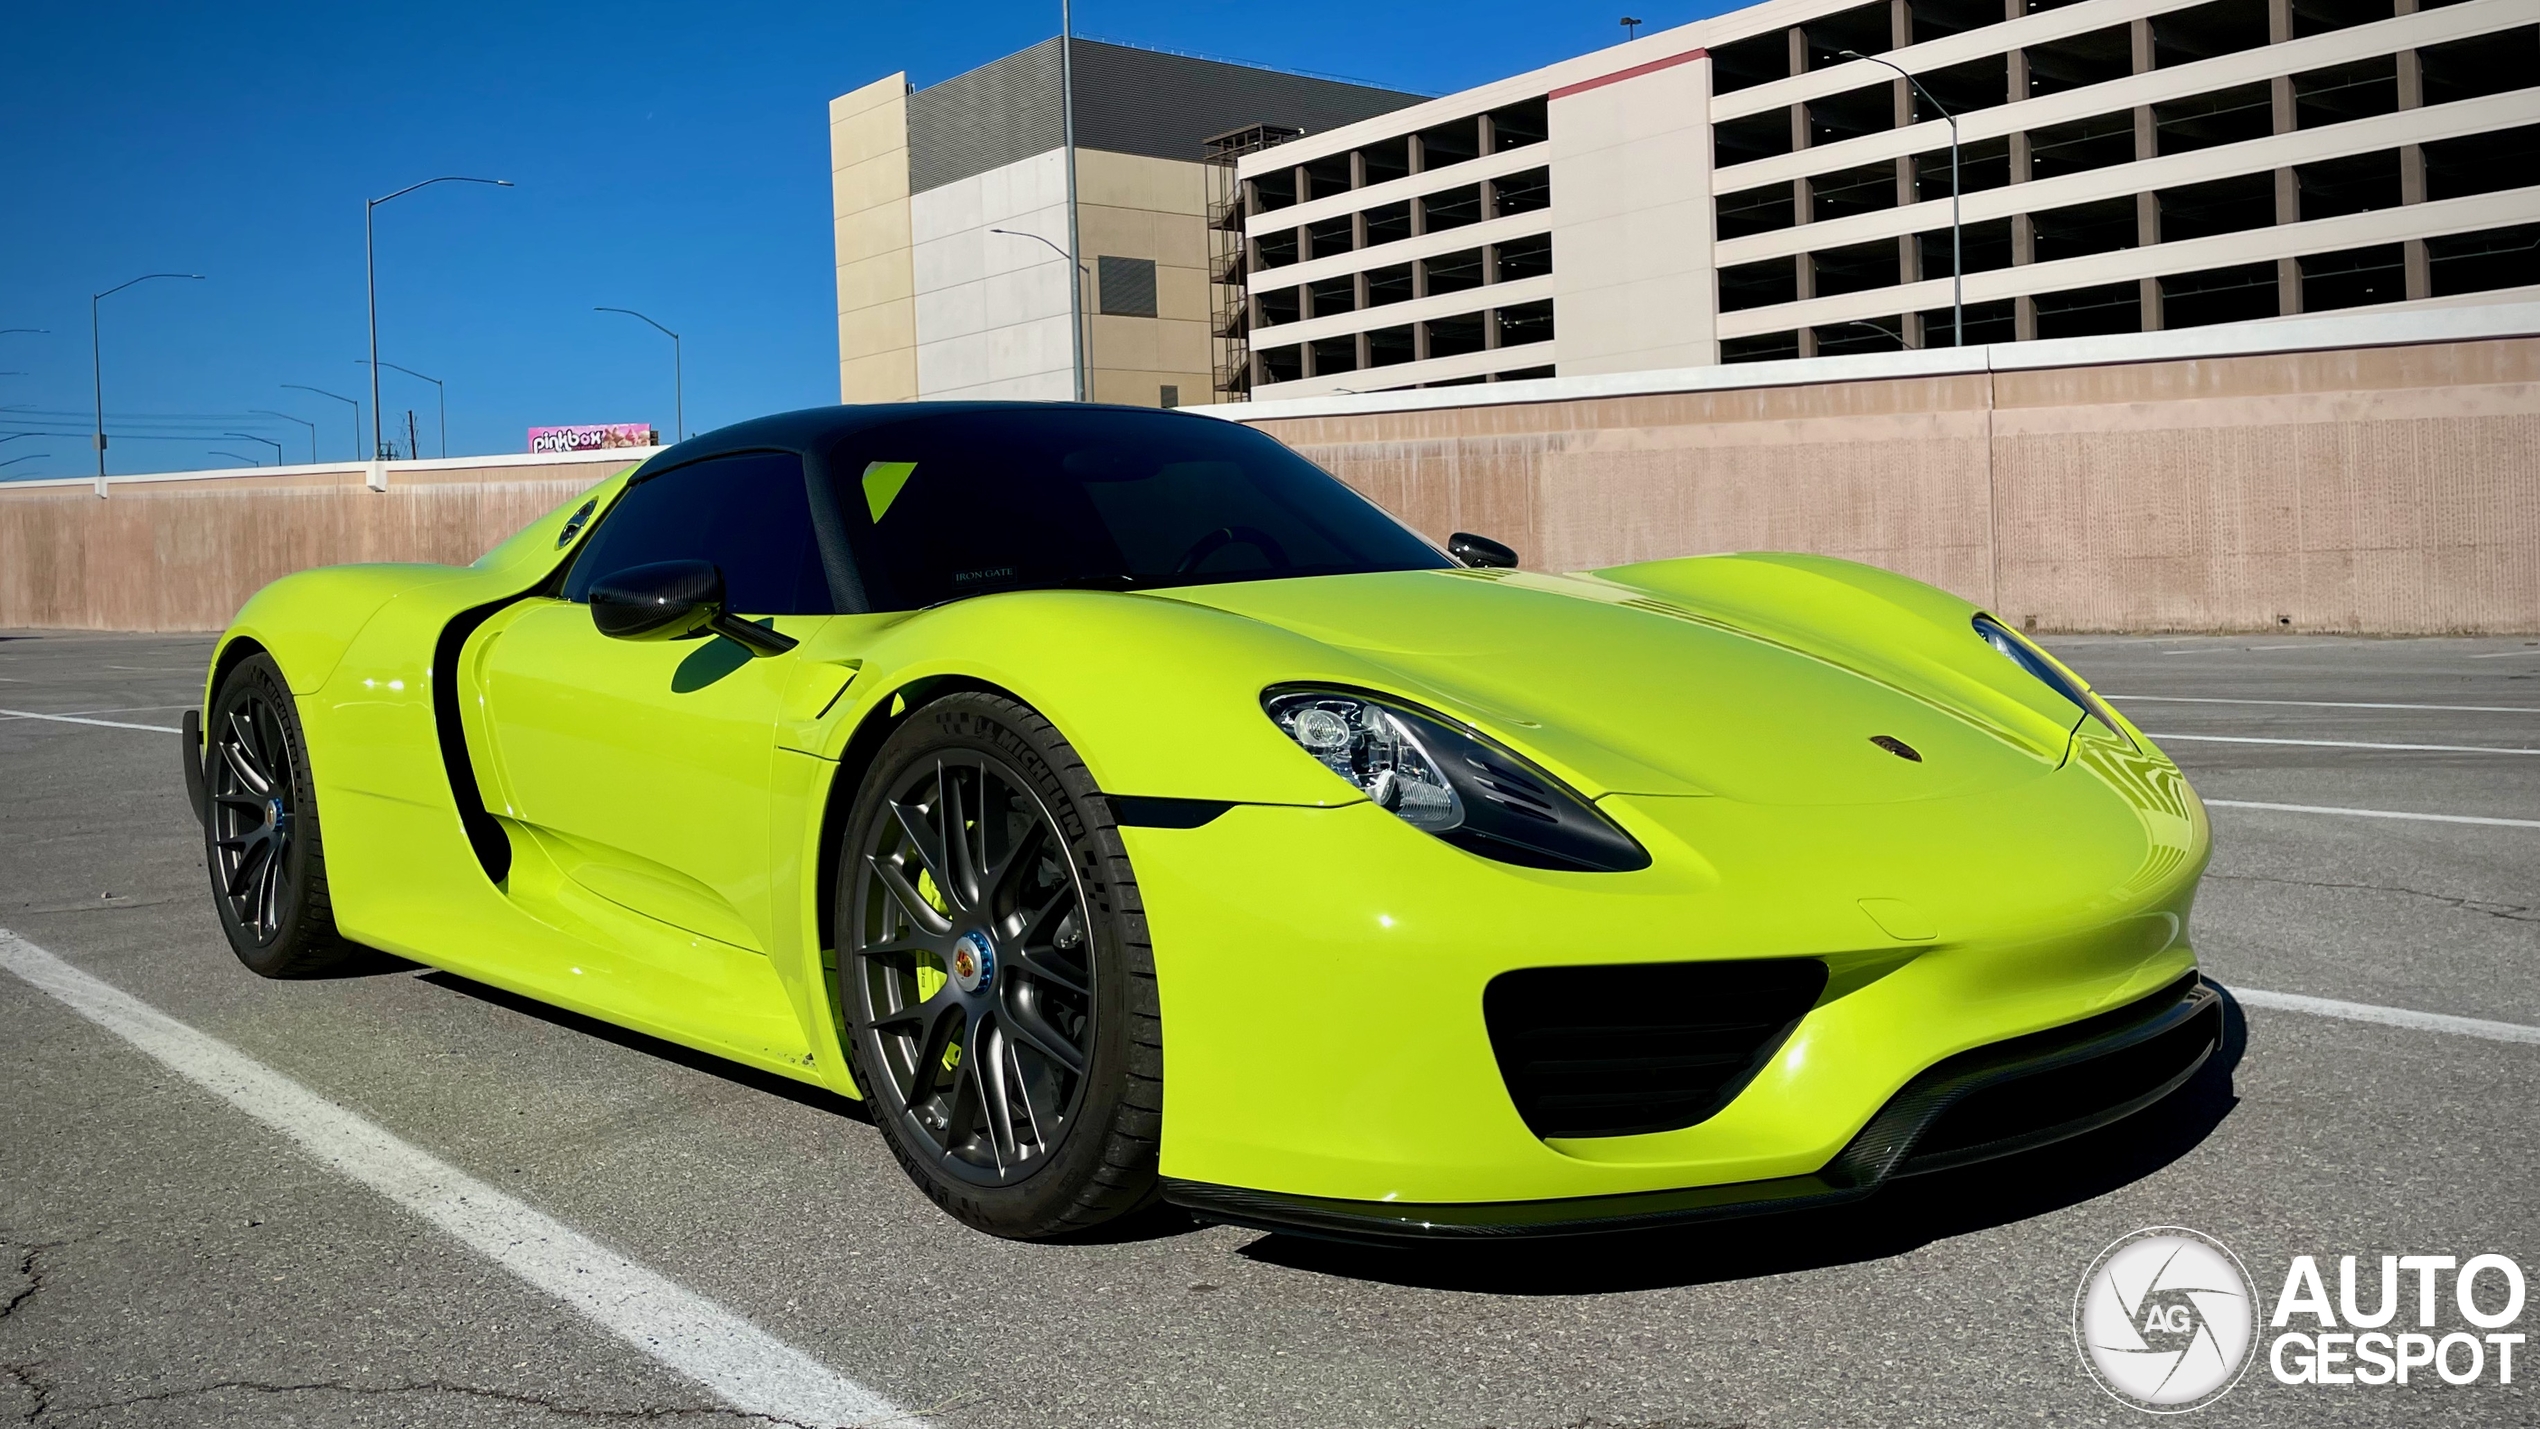 Porsche's most popular hybrid